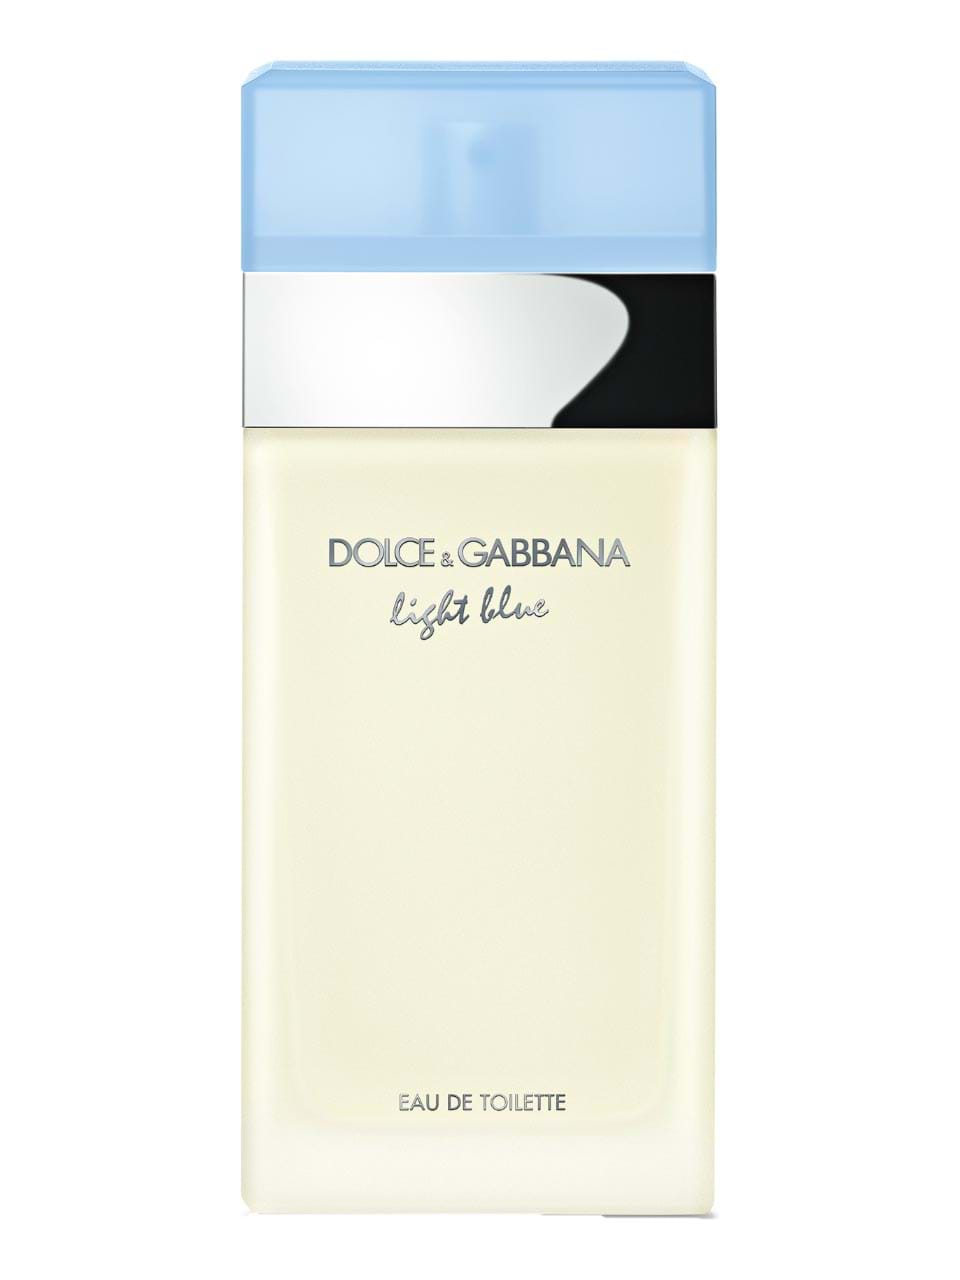 Bevidst at retfærdiggøre Rejse Dolce & Gabbana - fragrance for him and her - see here